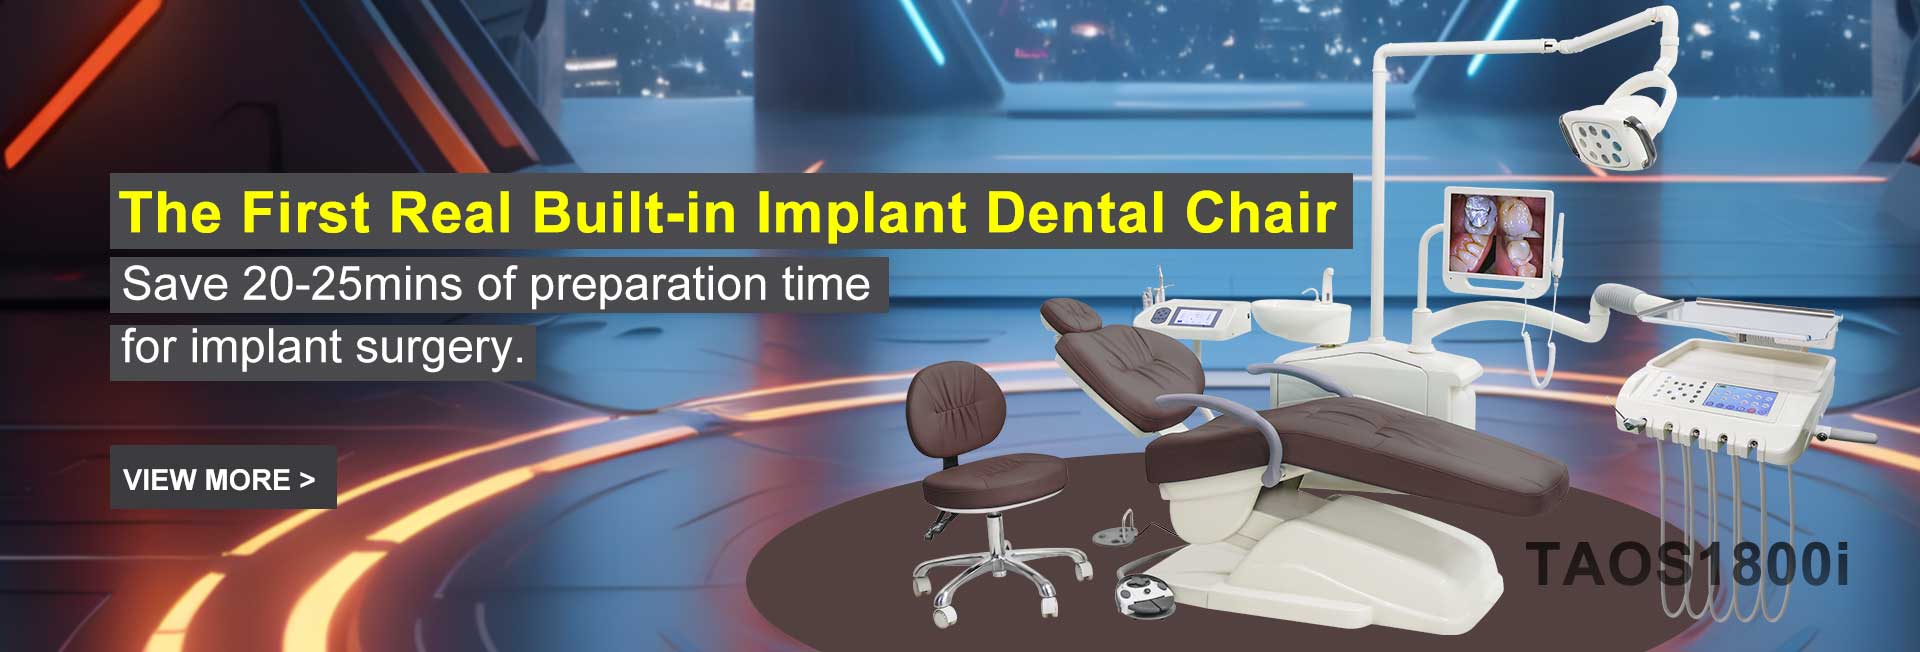 歯科インプラント手術用椅子 TAOS1800i